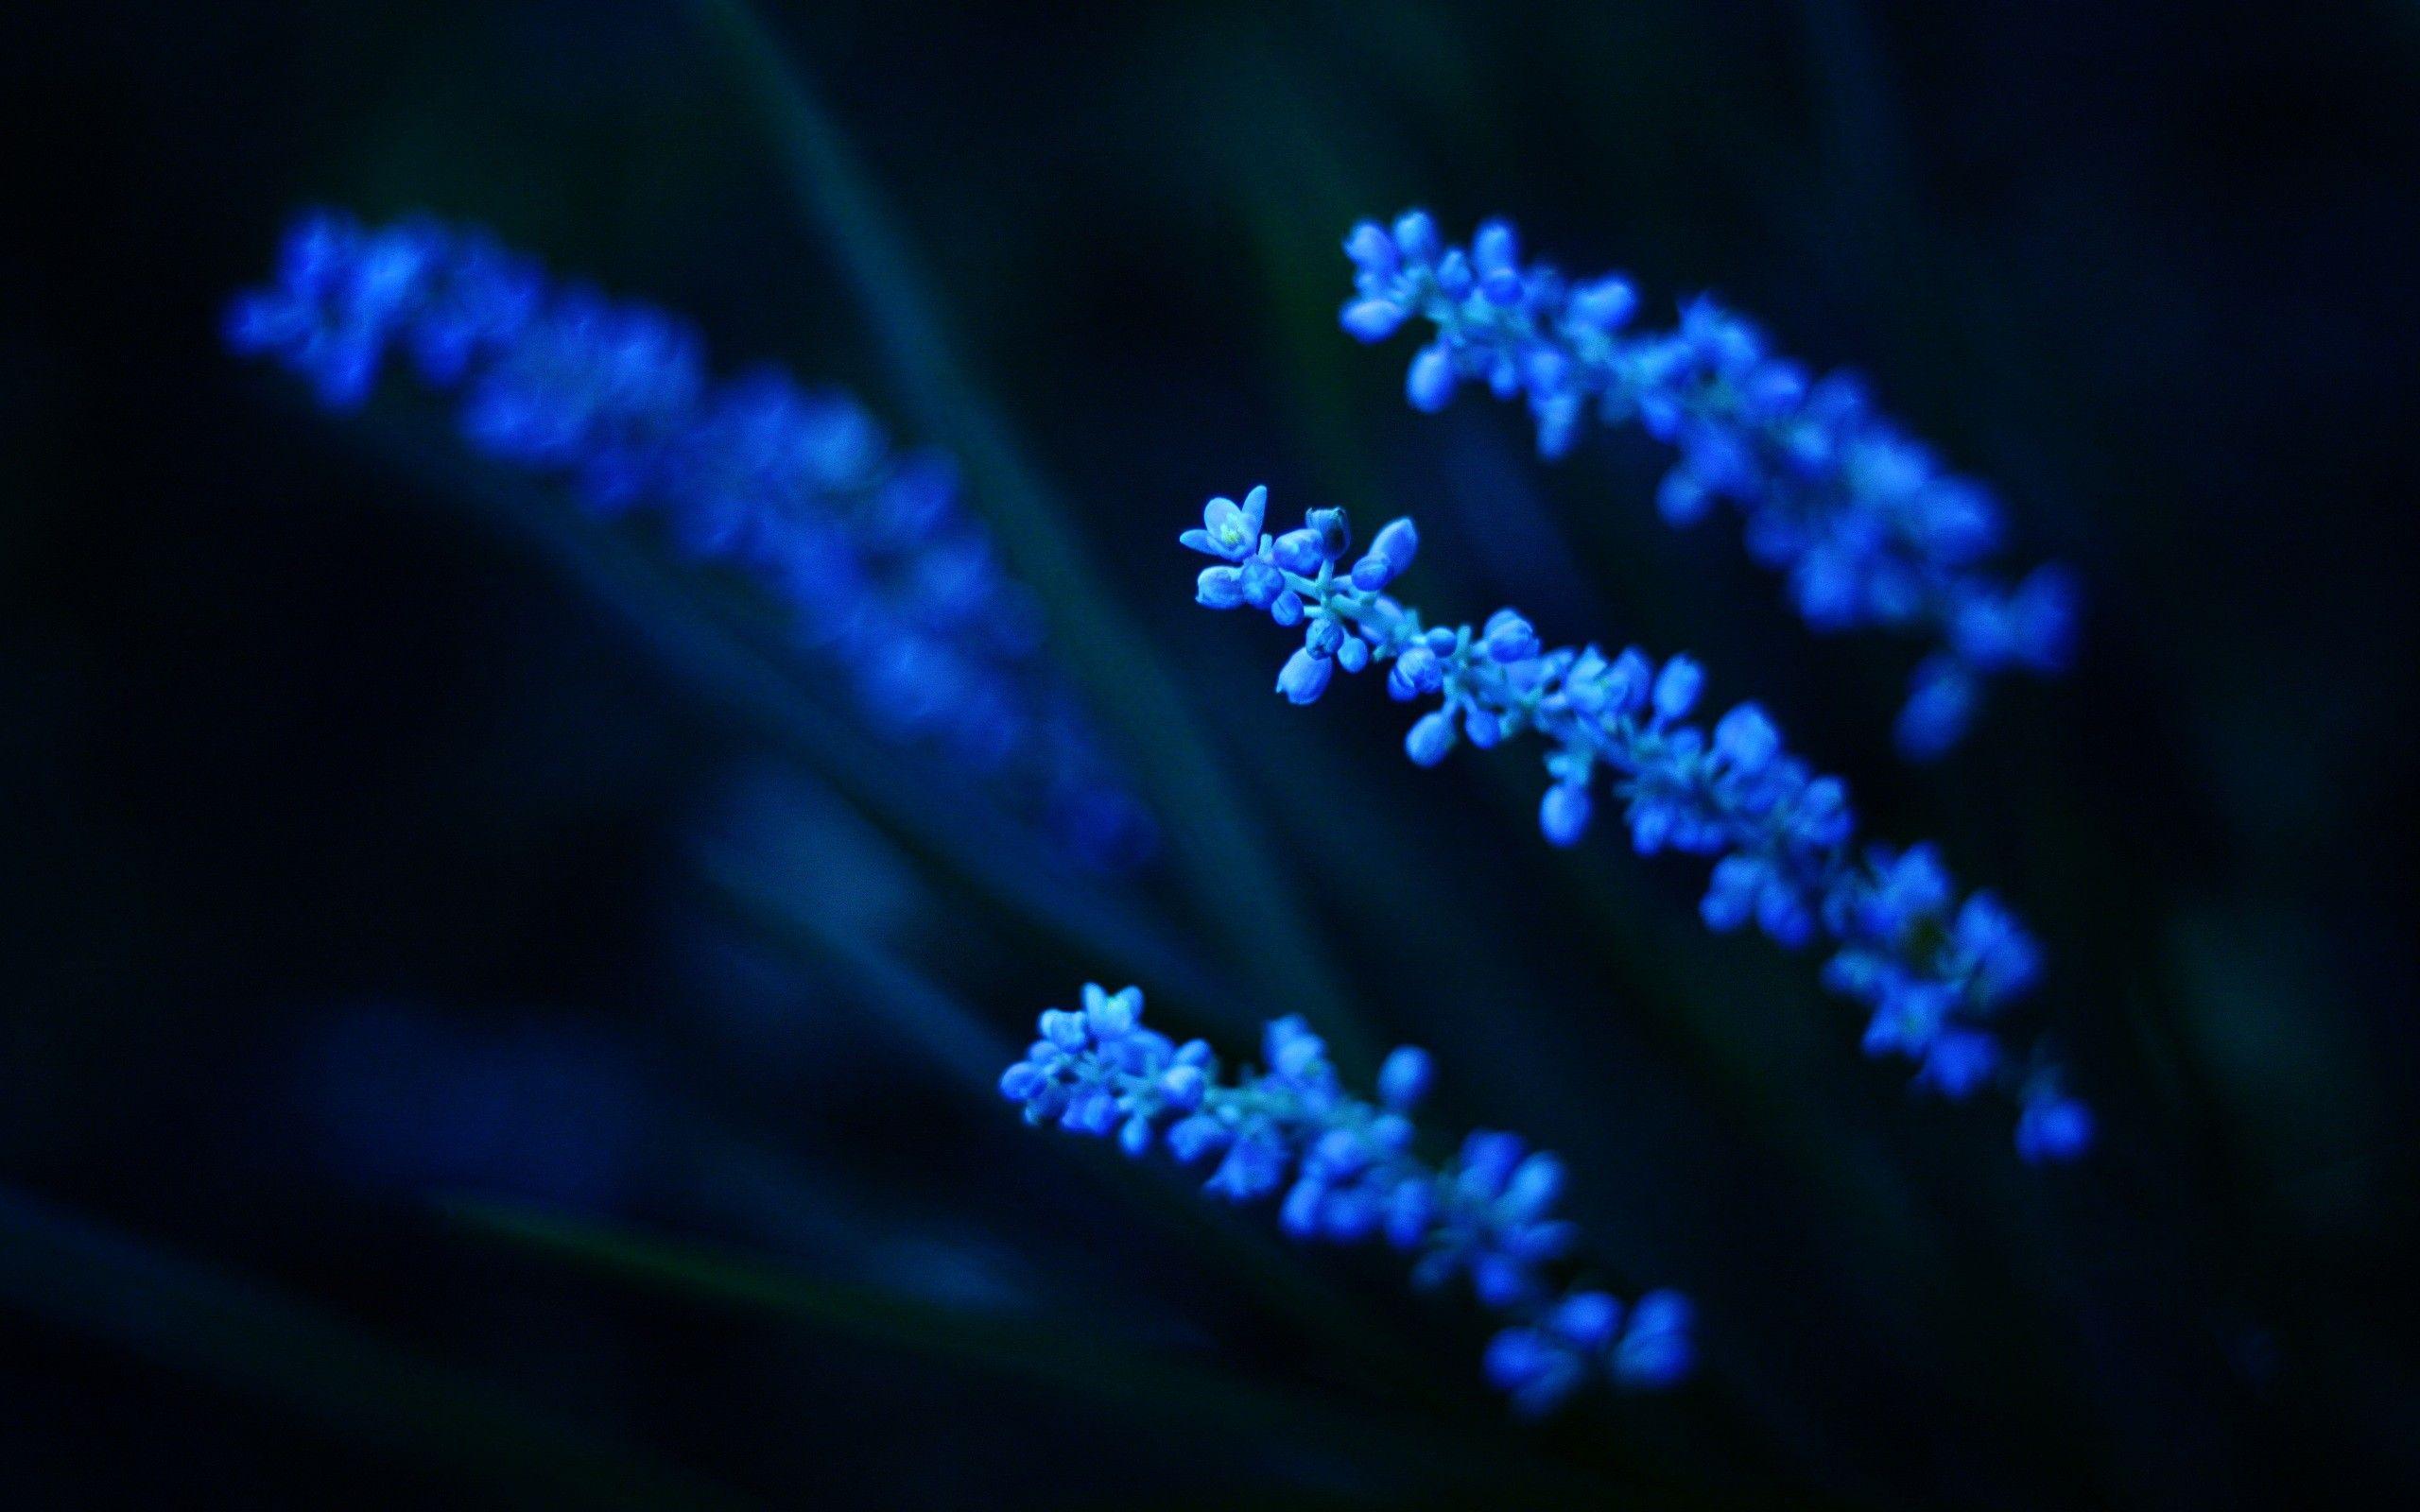 Dark Blue Flower. Beauty in Nature. Dark blue